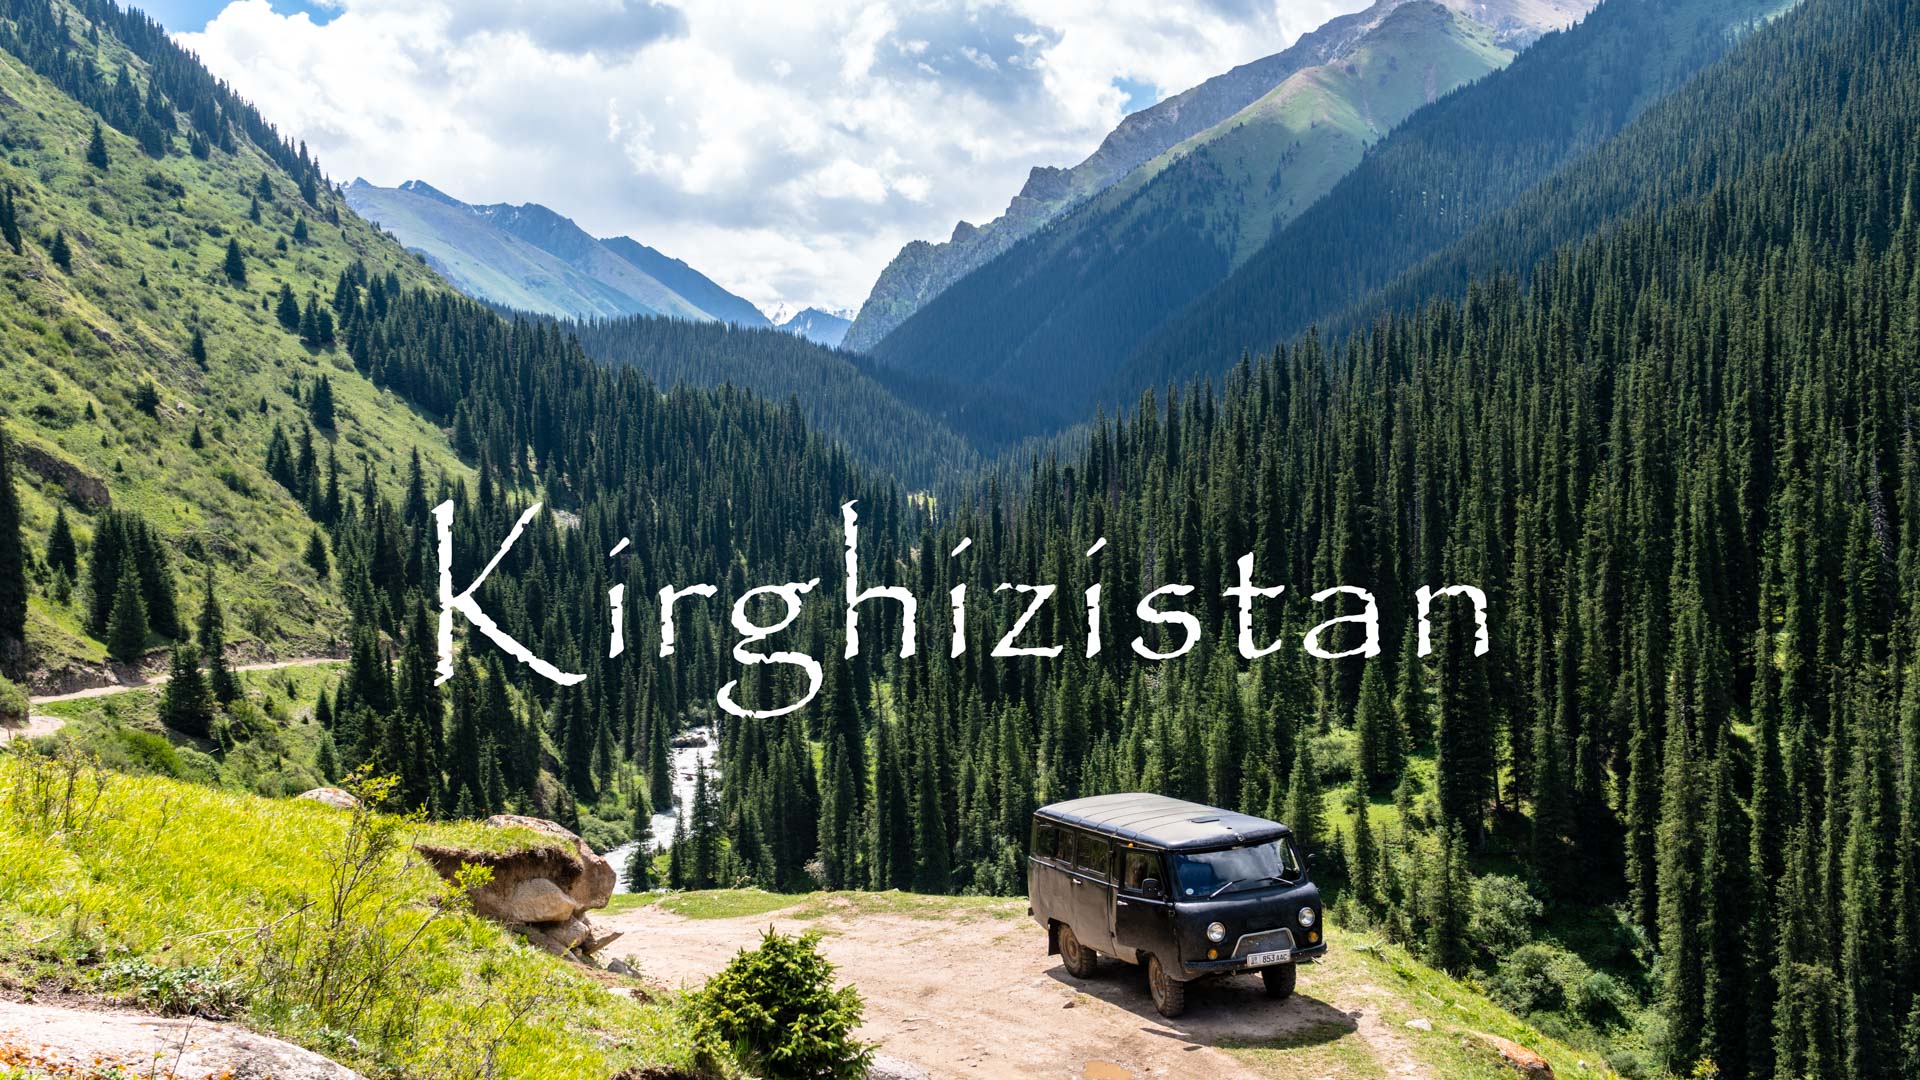 SerialHikers - Blog Voyage Alternatif SerialHikers - Voyage Engagé & Sans avion Destination Kirghizistan: notre guide voyage Kirghizistan, Asie Centrale Destinations